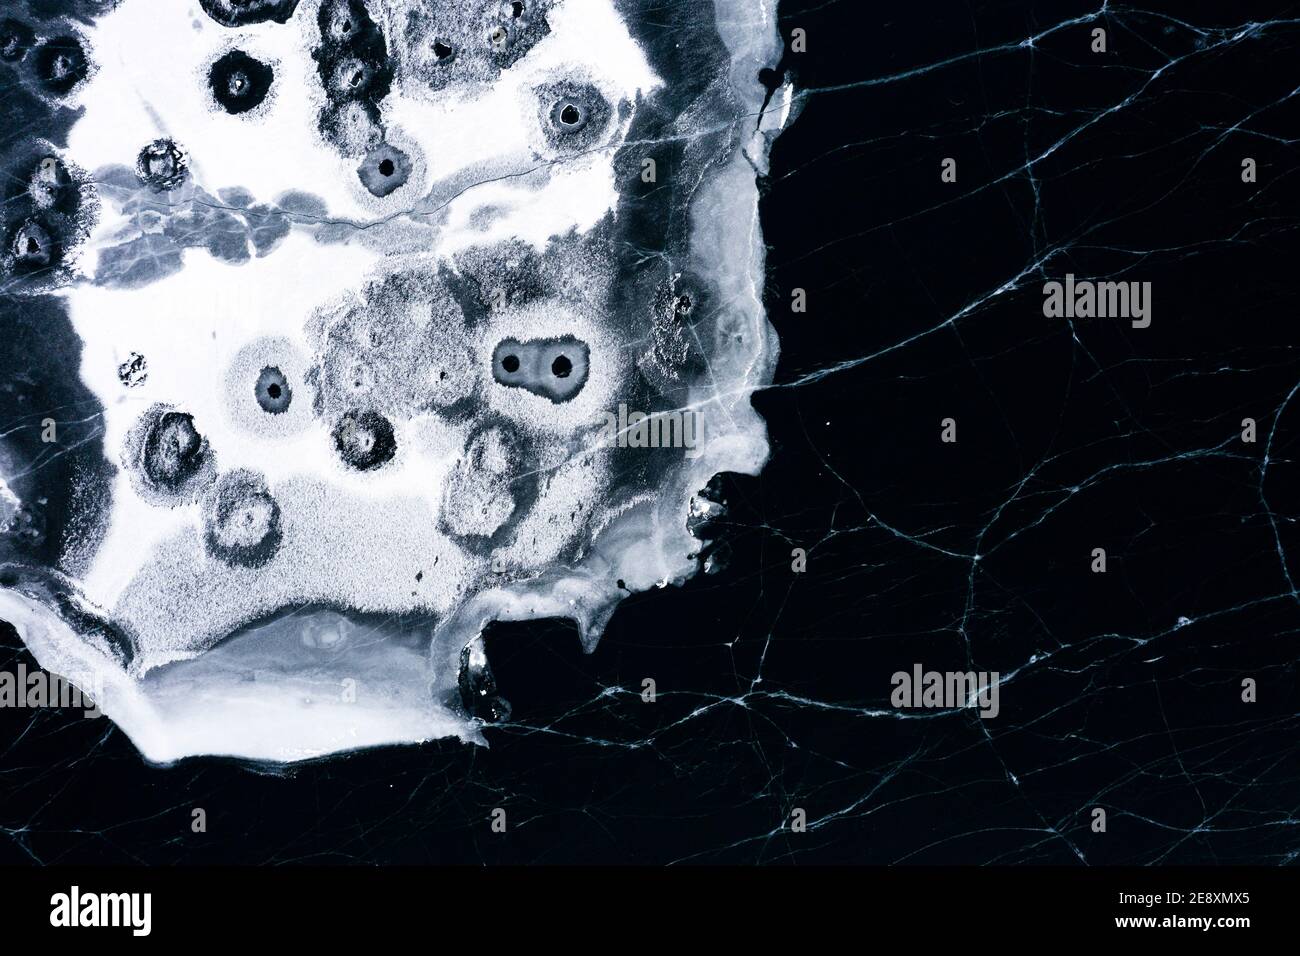 Details und Formen von geknacktem Eis am gefrorenen Silvaplana-See, Luftaufnahme, Maloja, Engadin, Kanton Graubünden, Schweiz Stockfoto